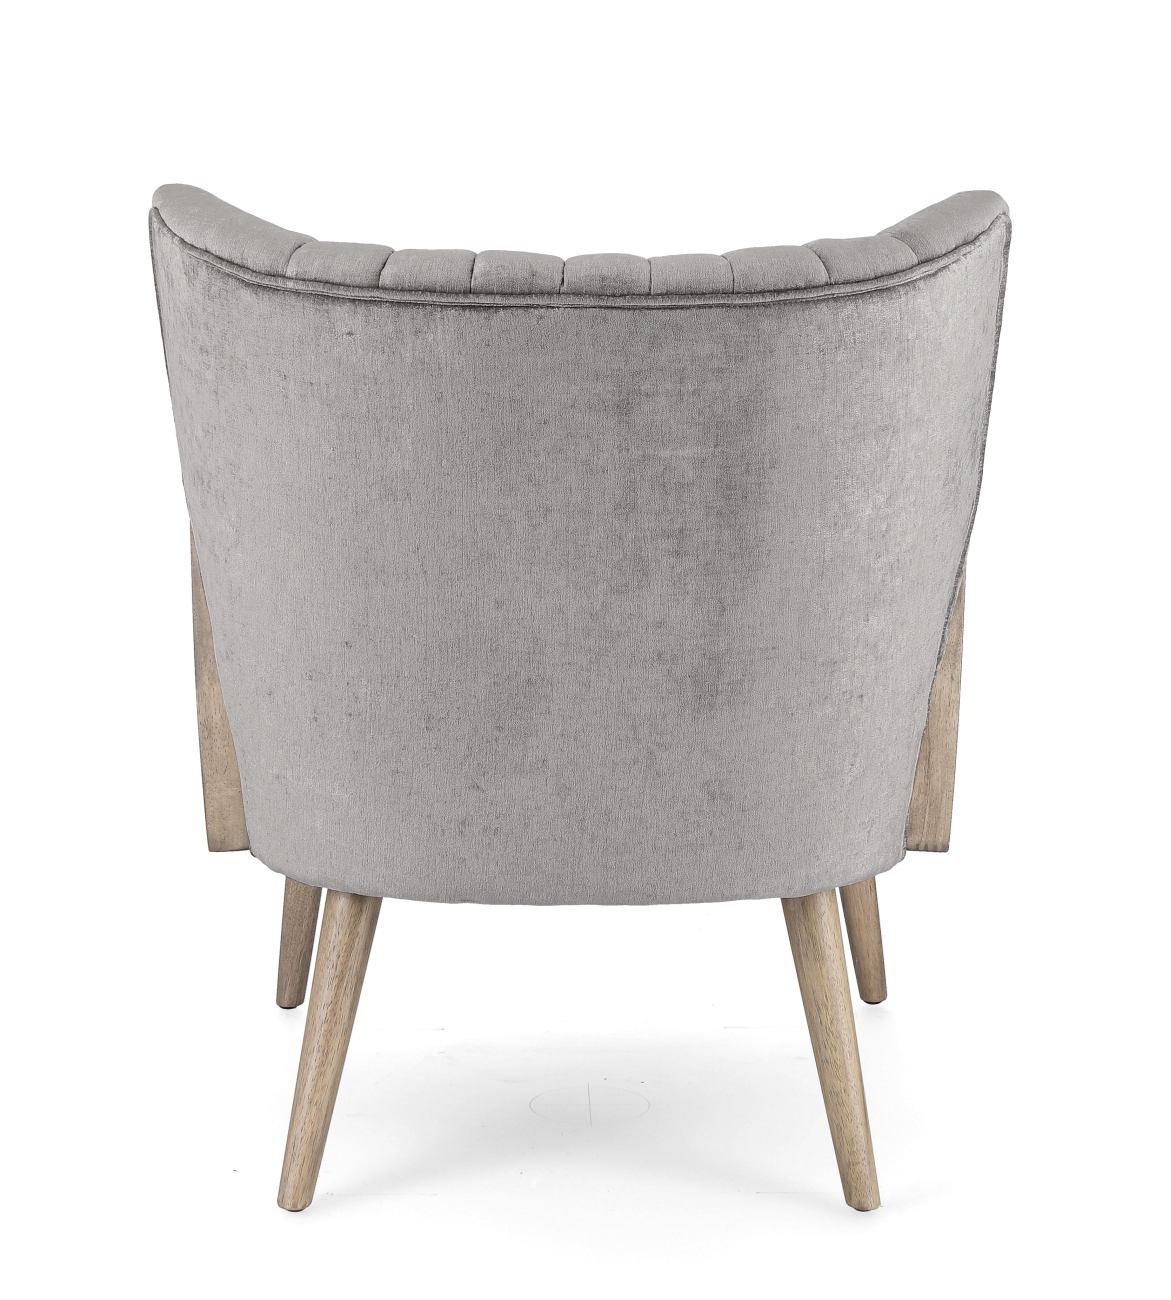 Der Sessel Virna überzeugt mit seinem modernen Stil. Gefertigt wurde er aus einem Stoff-Bezug, welcher einen grauen Farbton besitzt. Das Gestell ist aus Kautschukholz und hat eine braune Farbe. Der Sessel verfügt über eine Armlehne.